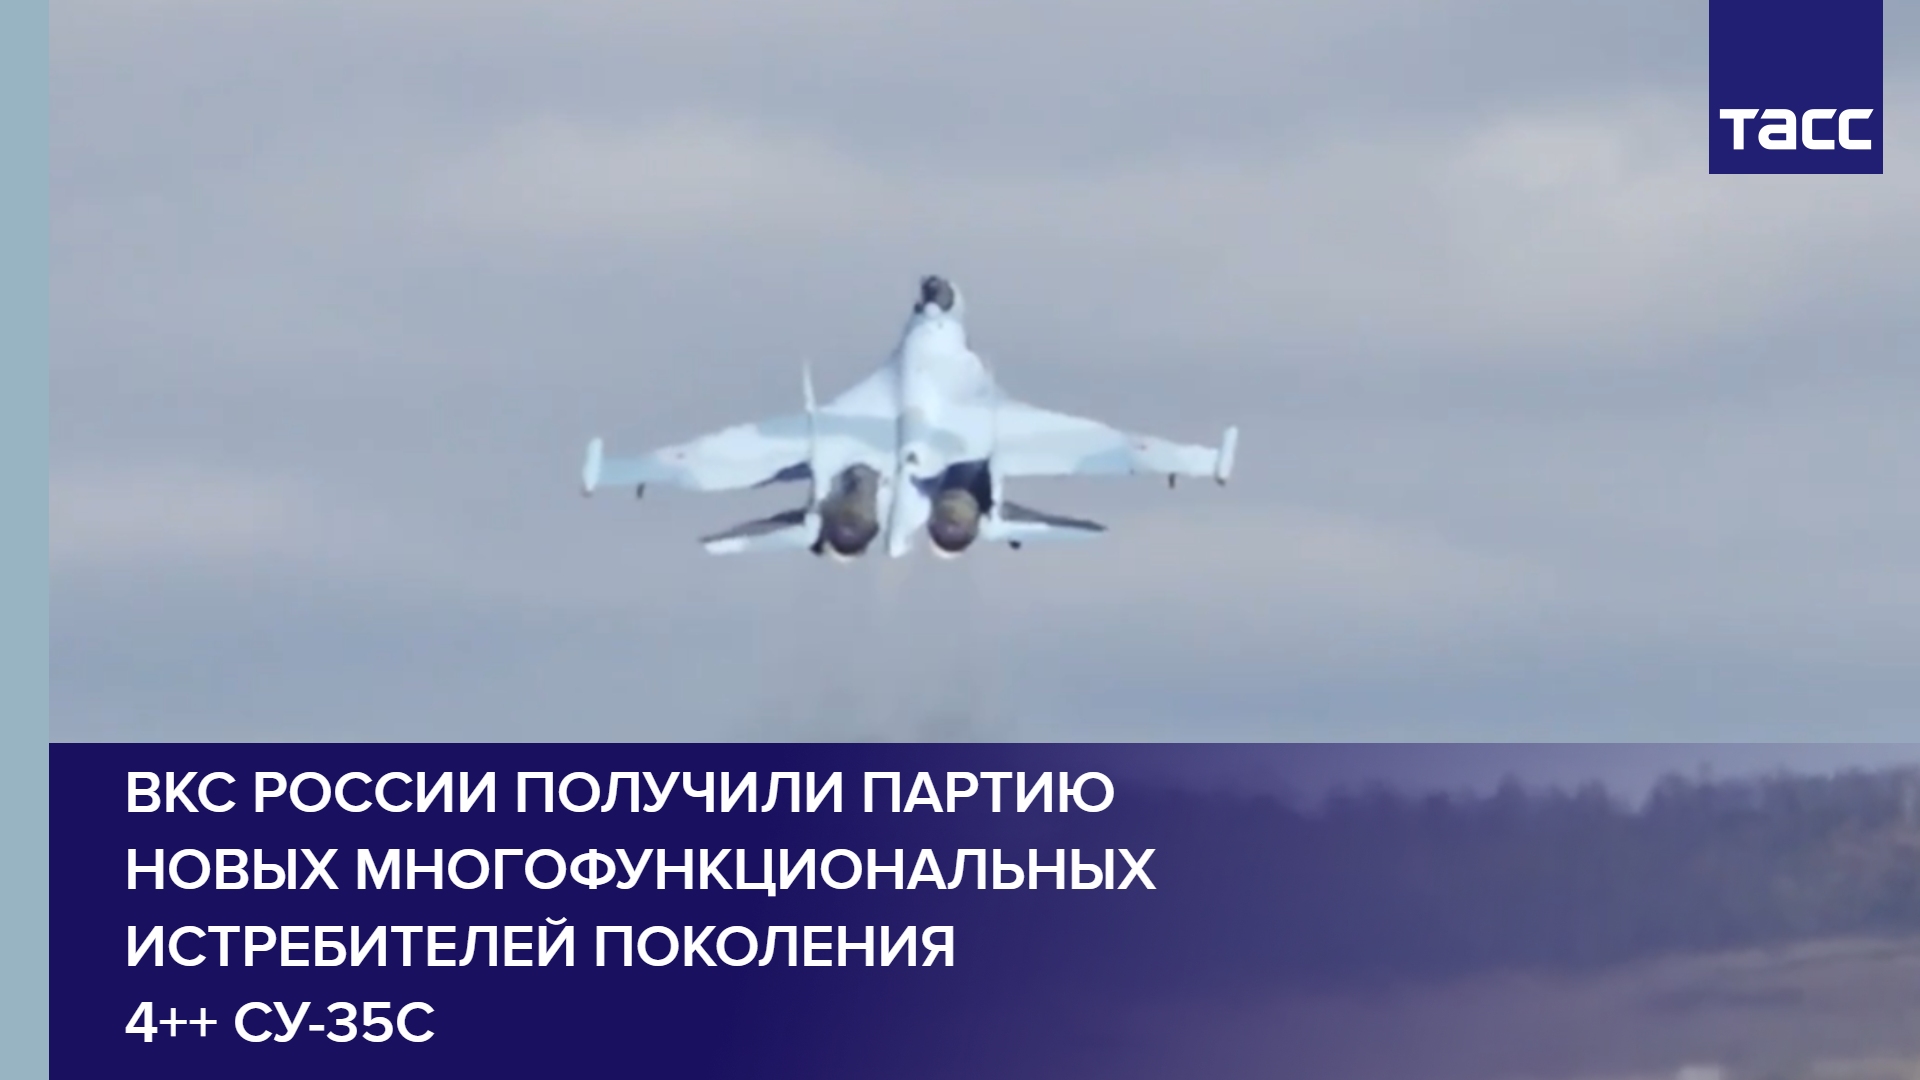 ВКС России получили партию новых многофункциональных истребителей поколения 4++ Су-35С